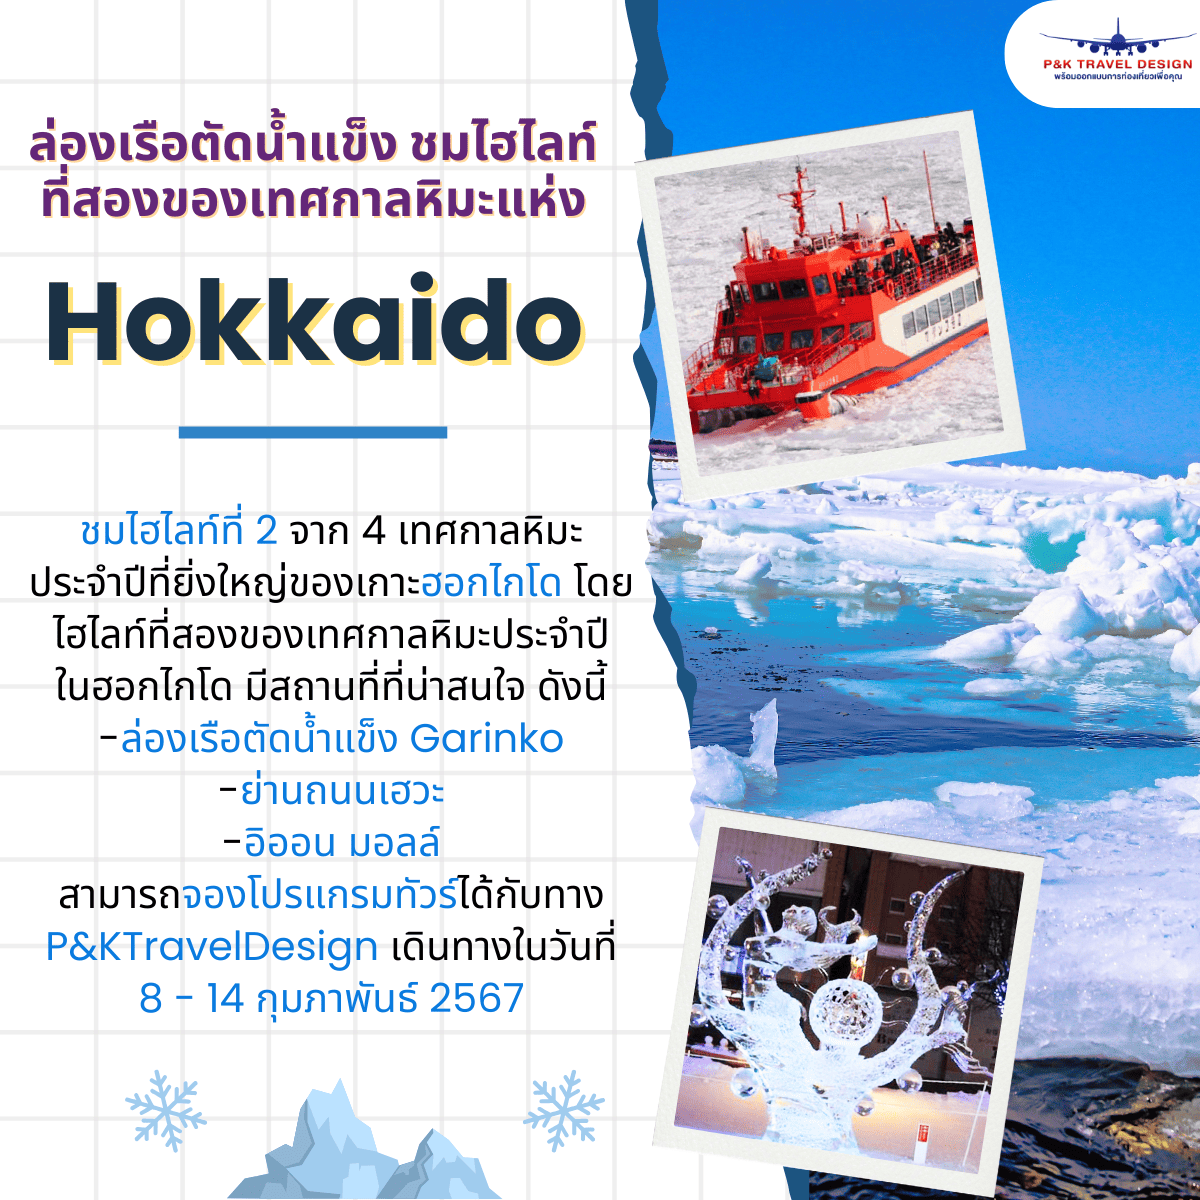 ล่องเรือตัดน้ำแข็ง ชมไฮไลท์ที่สองของเทศกาลหิมะแห่ง“ฮอกไกโด”!!